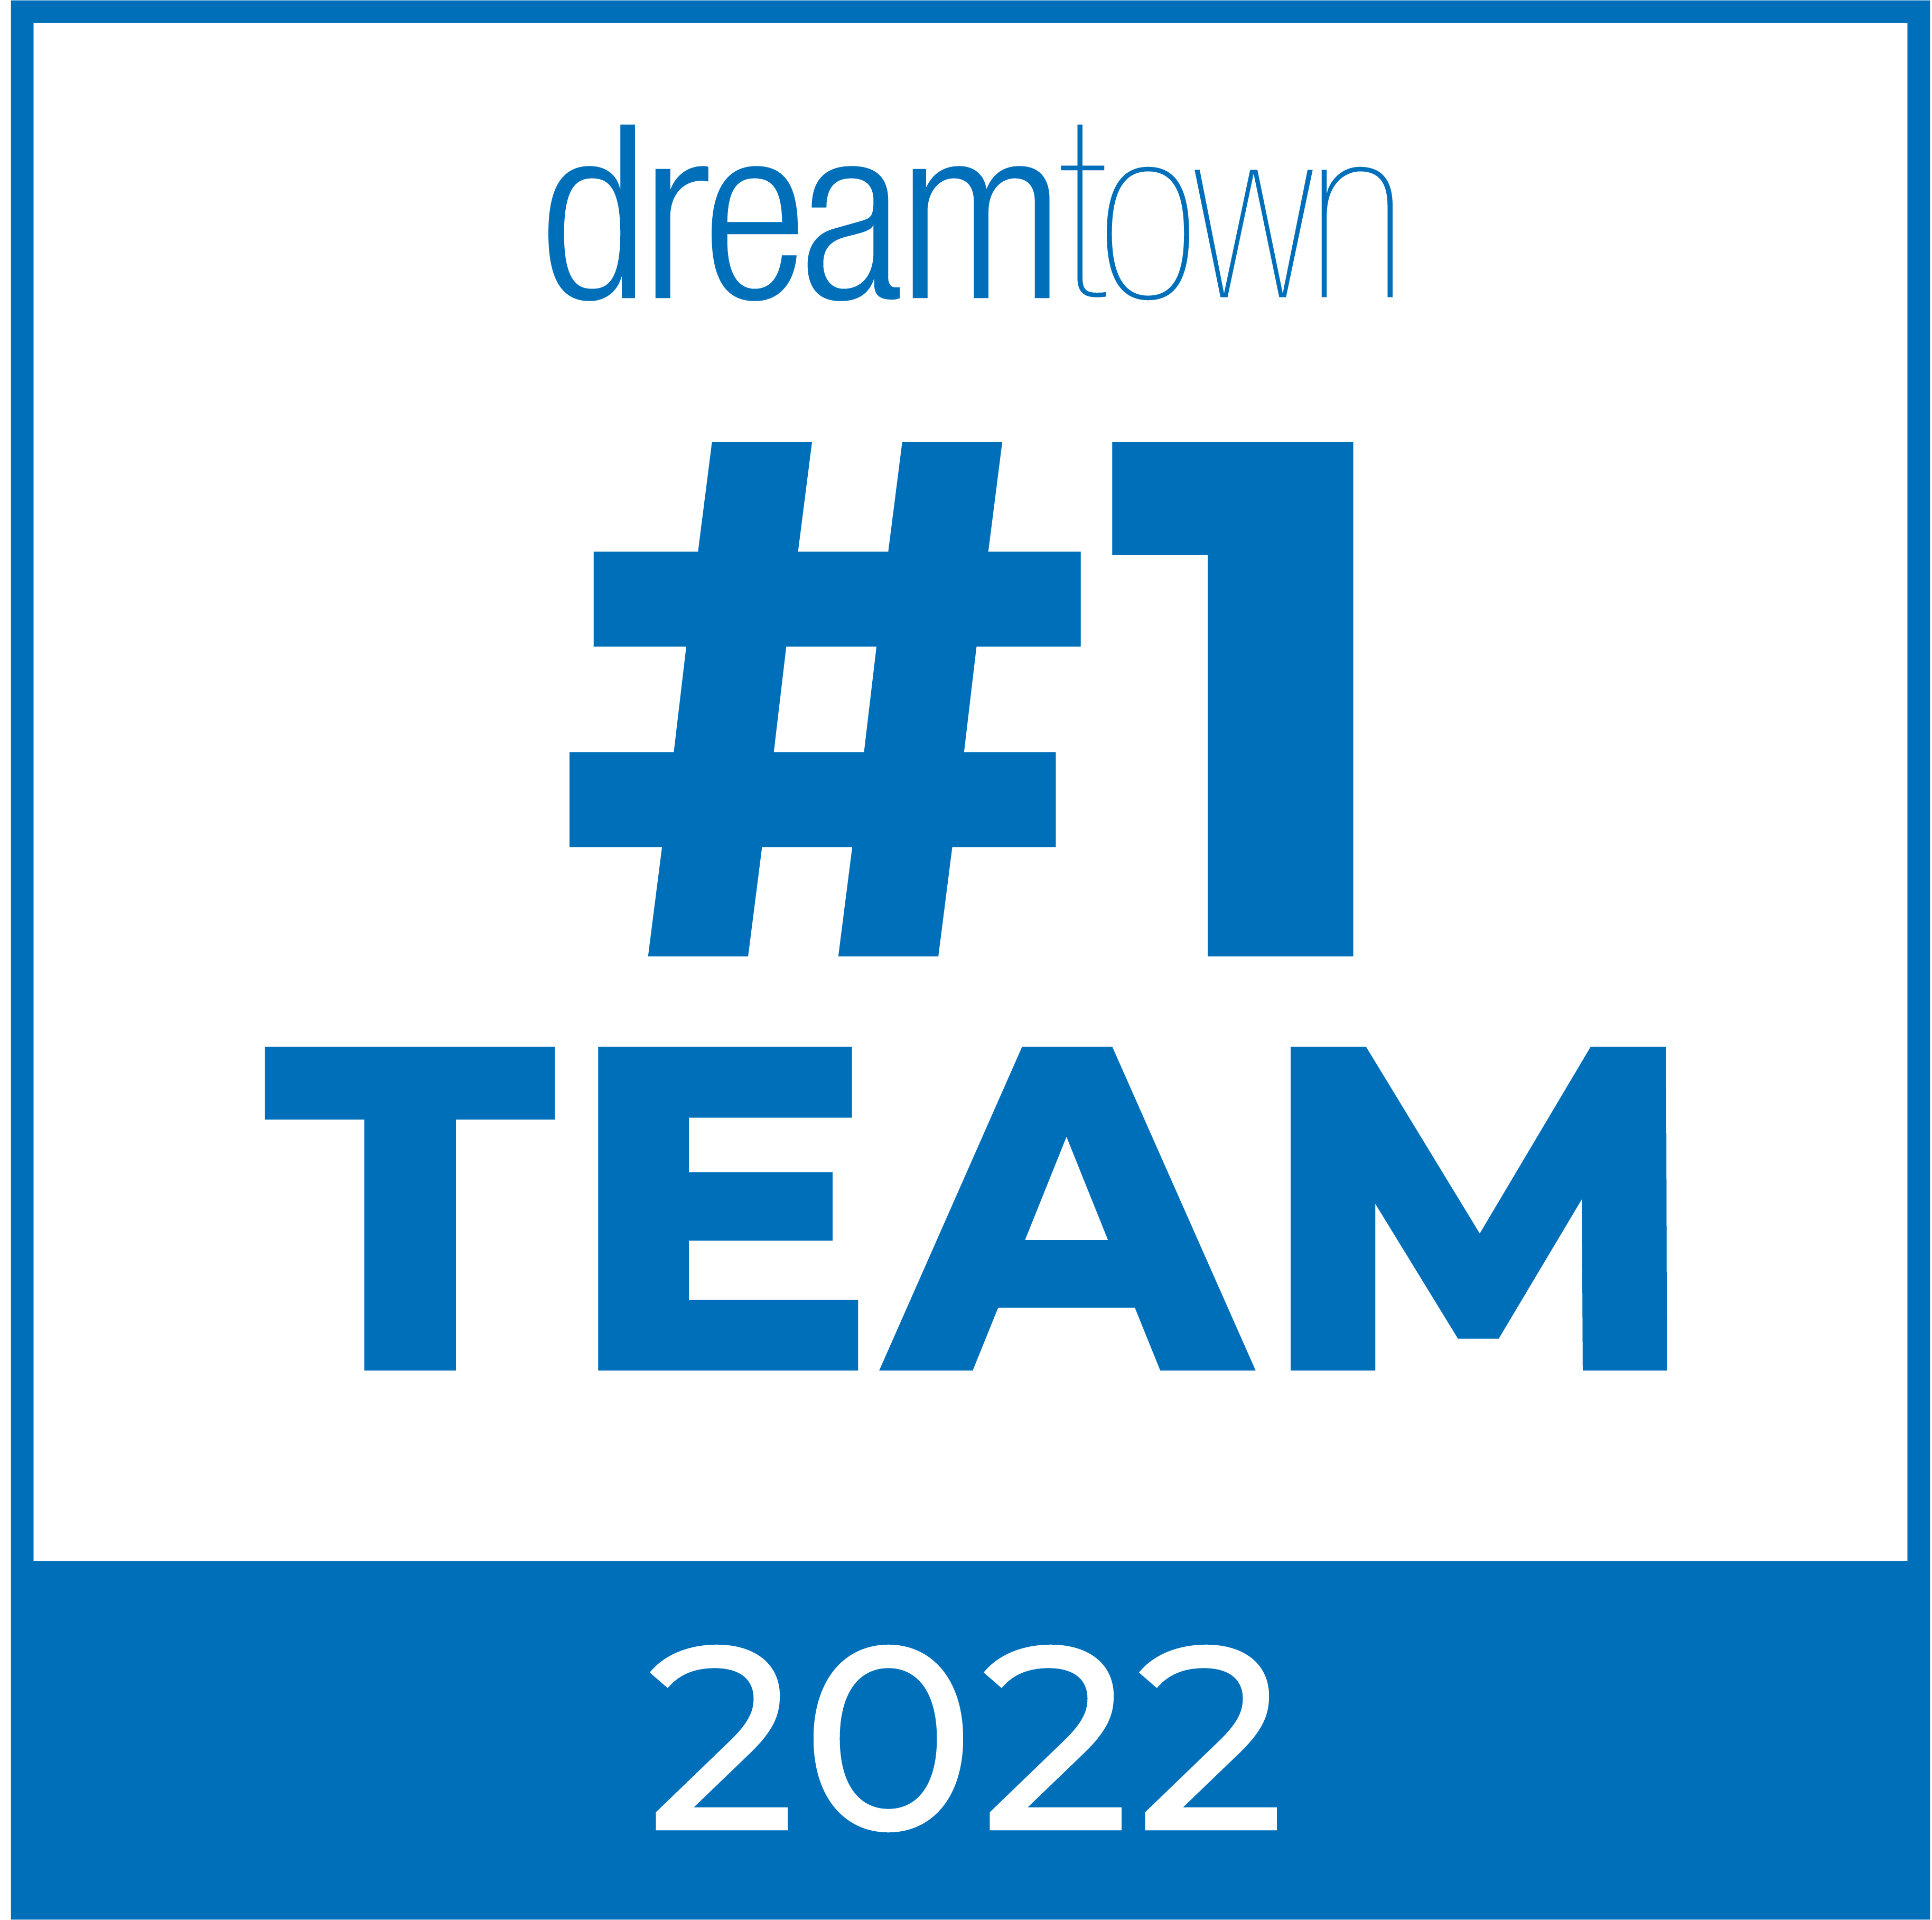 Dream Town #1 Team 2022